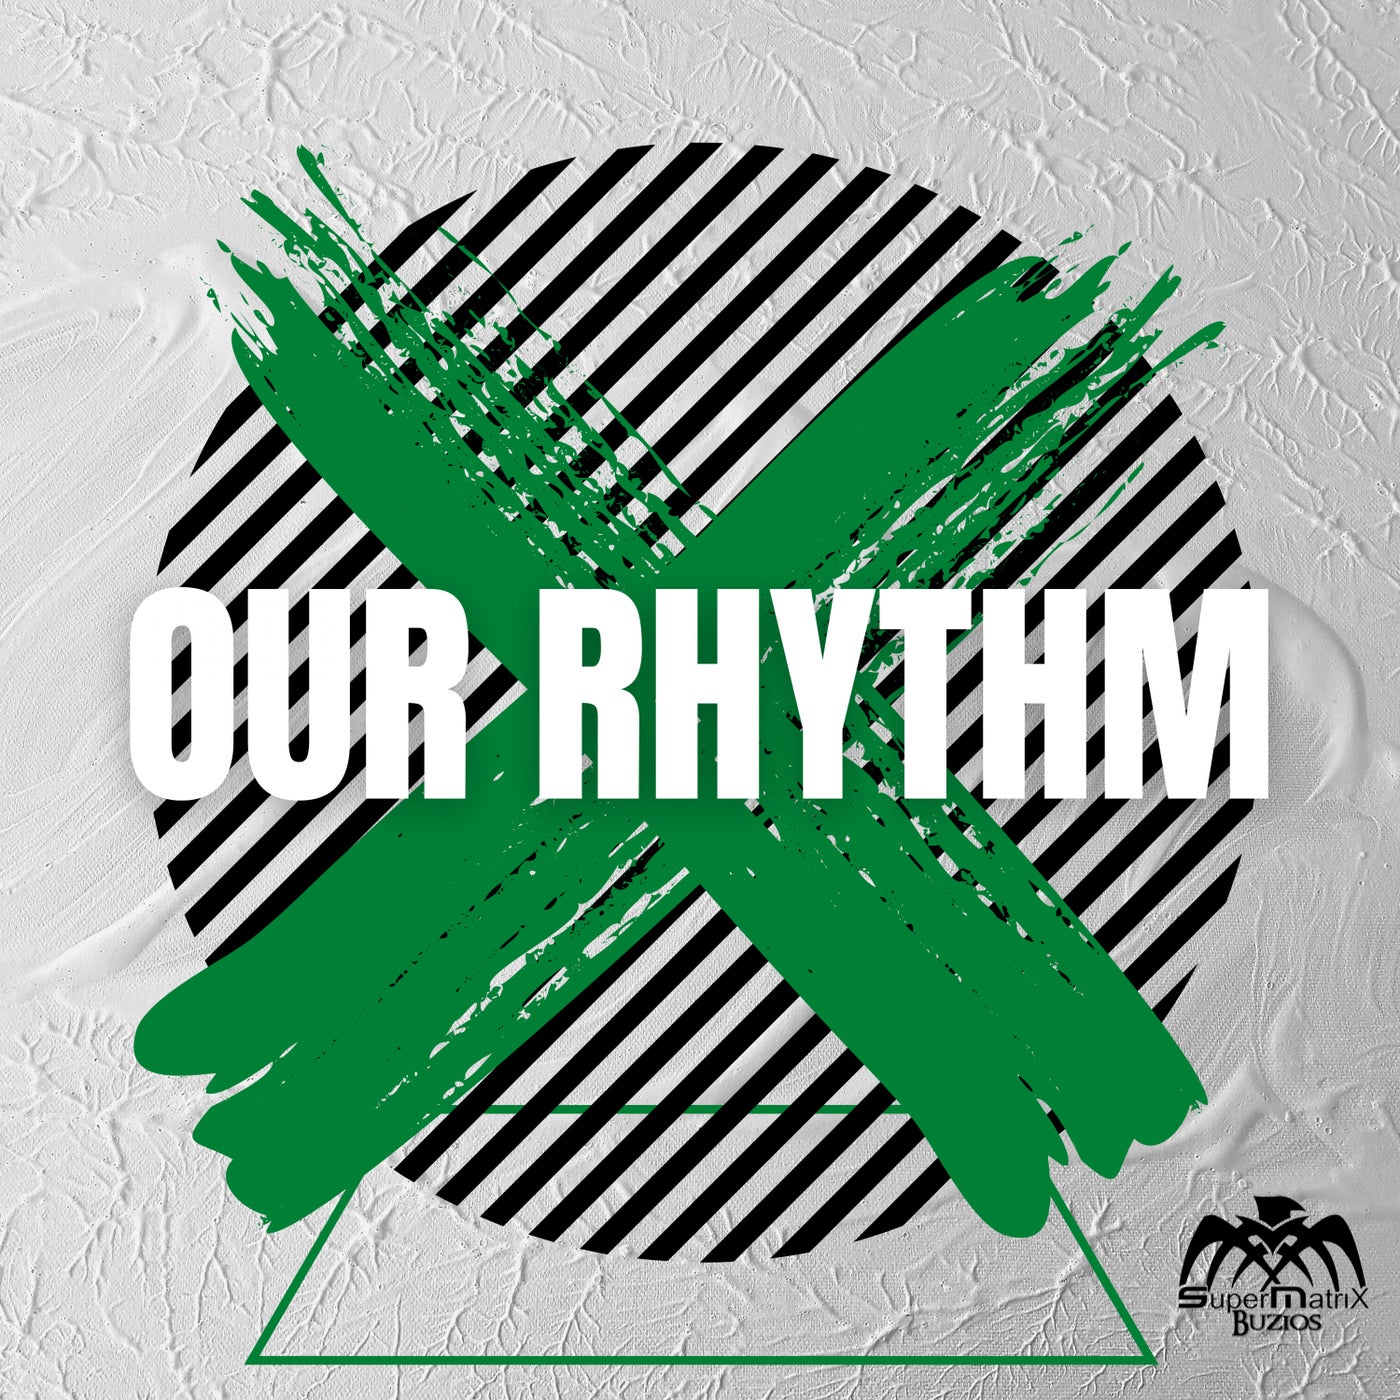 Our Rhythm